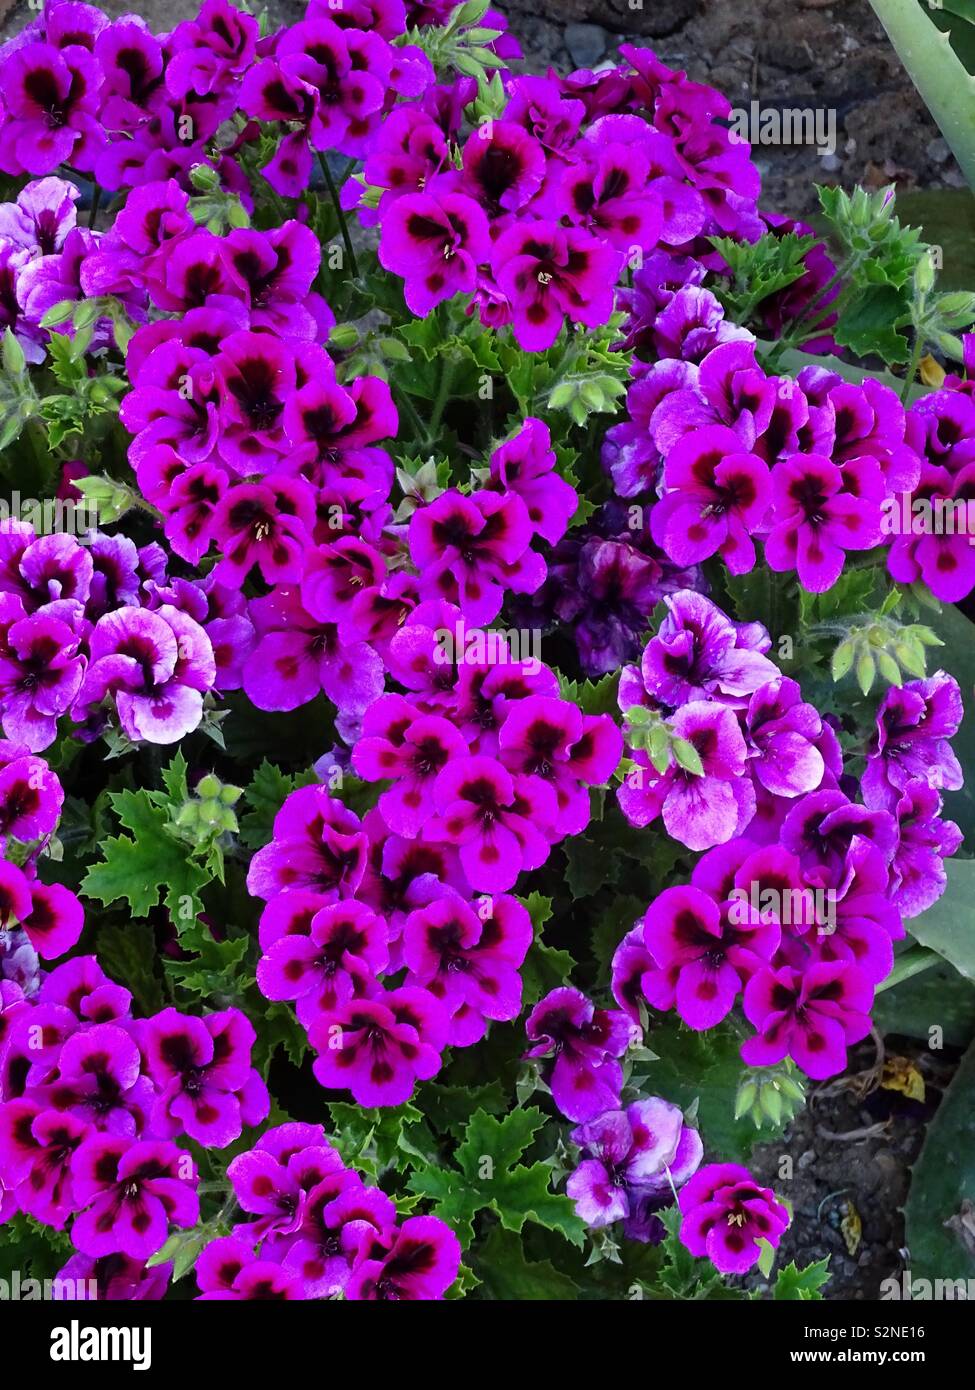 Purple pelargonium flowers in Spain Stock Photo